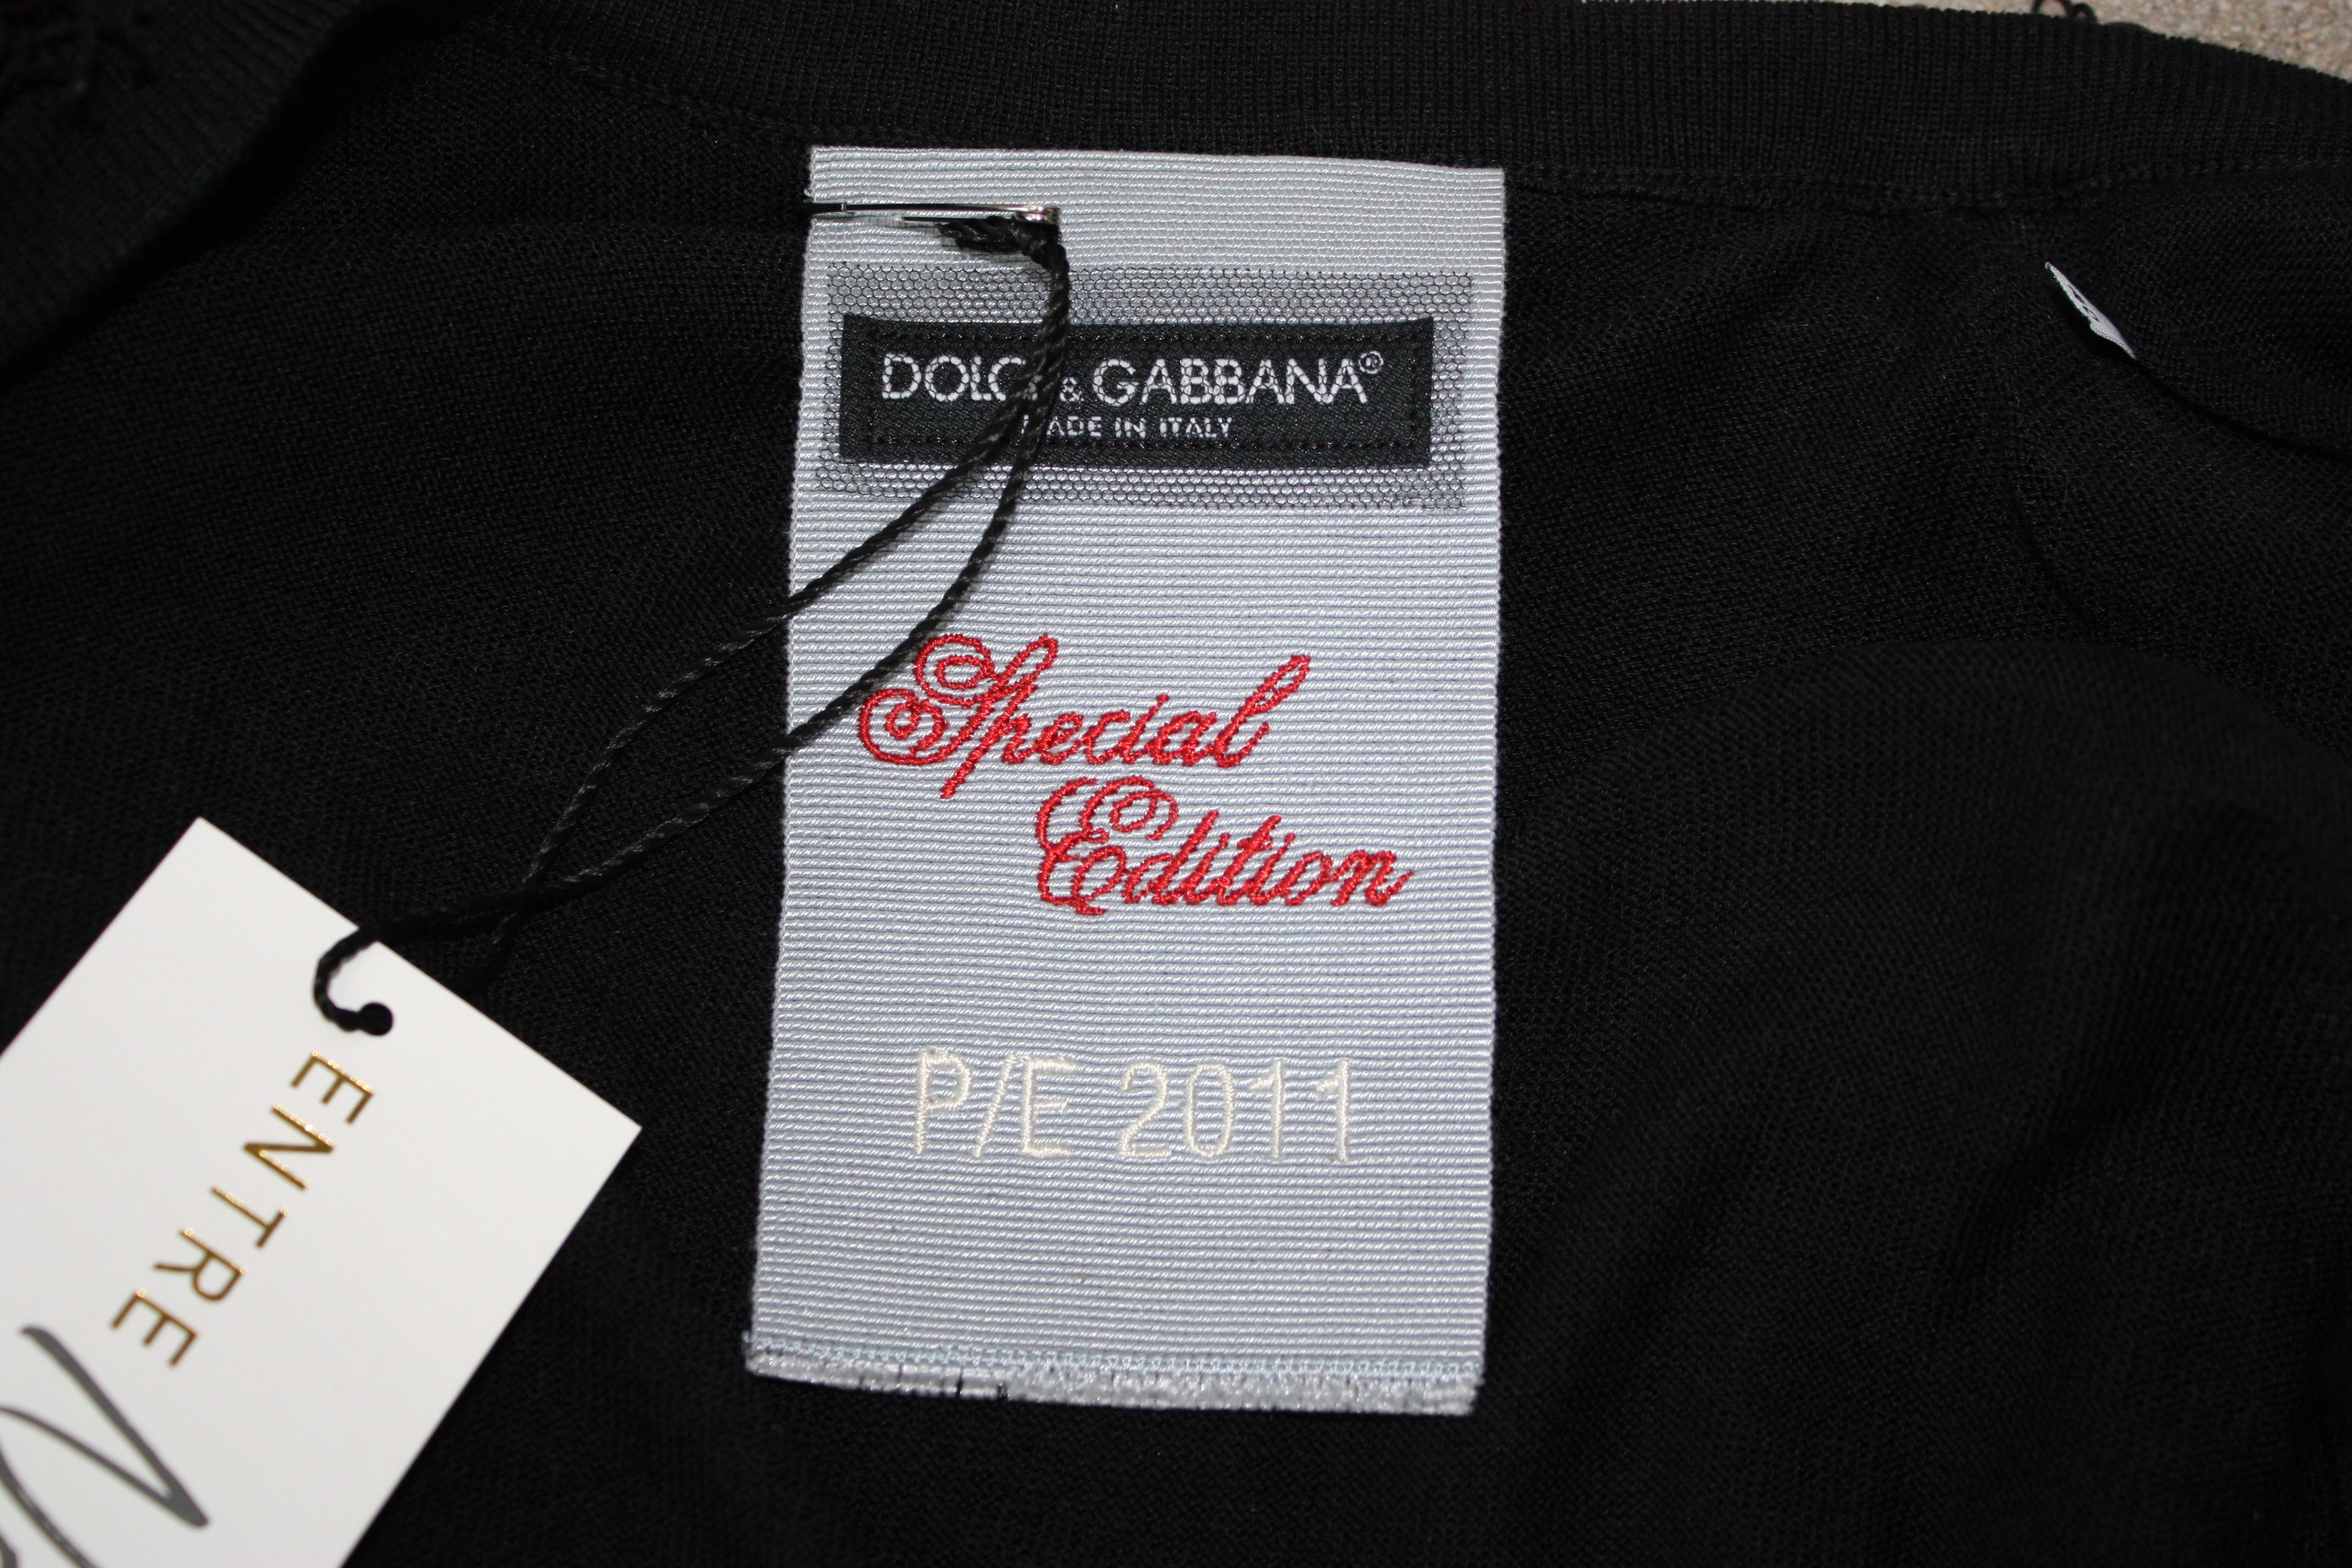 Cardigan à franges noir édition spéciale Dolce and Gabbana. manches 3/4. Boutons noirs ton sur ton avec Dolce et Gabbana gravés dessus. Taille XS. 